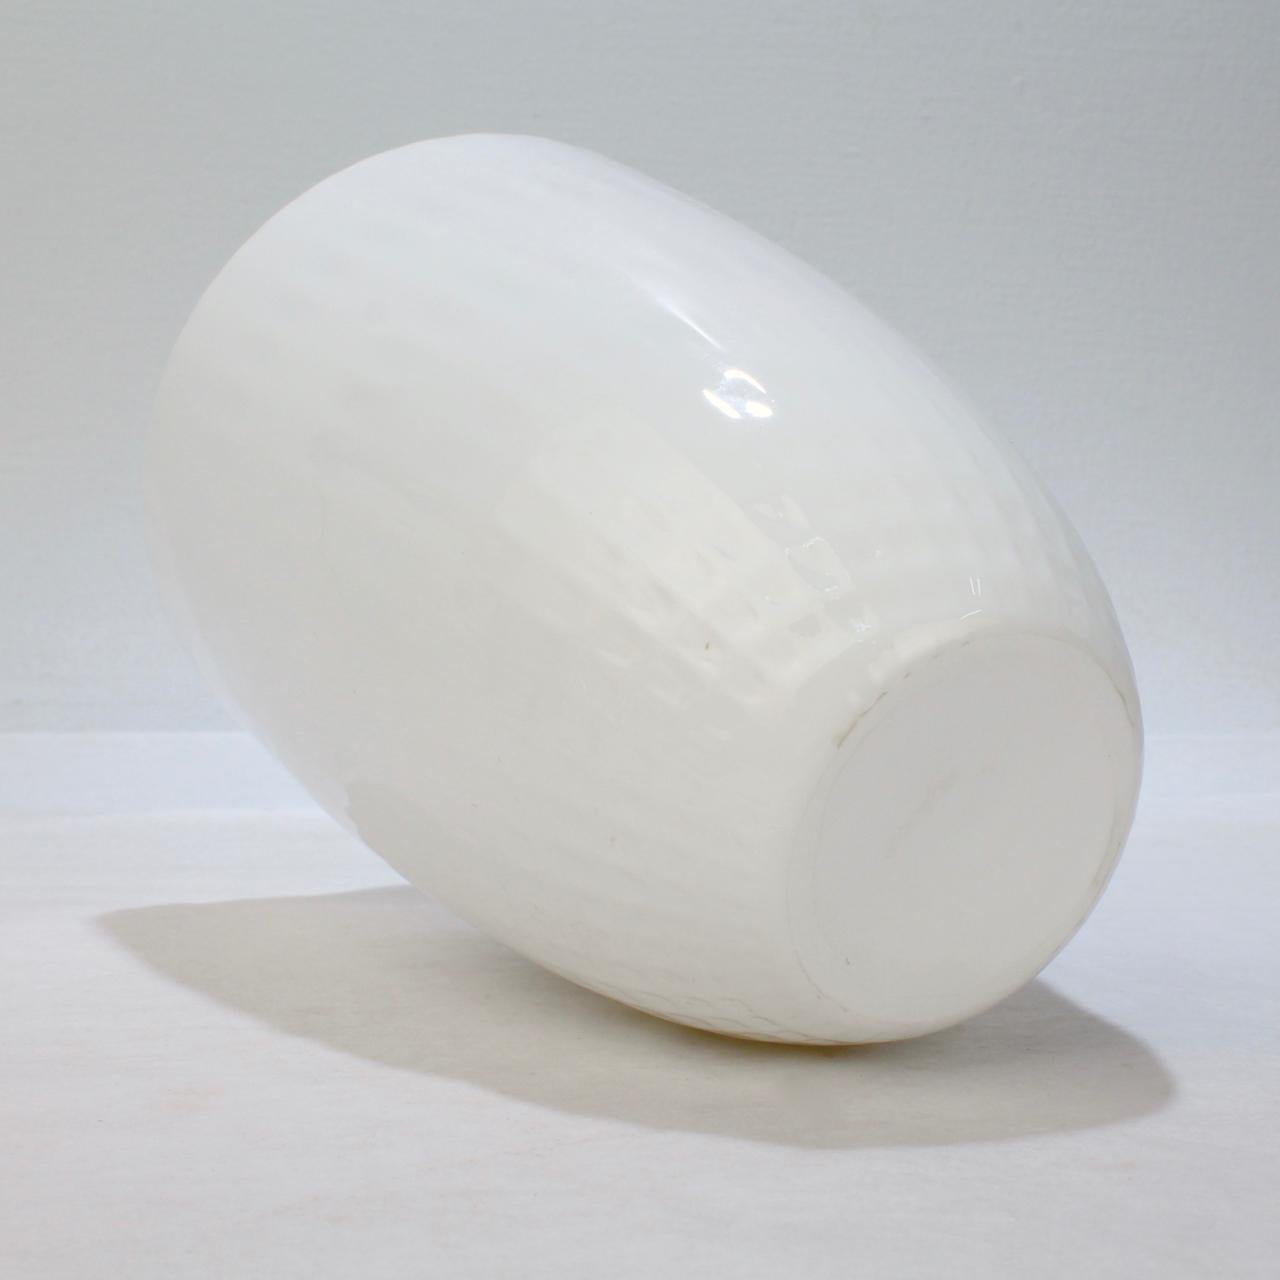 20th Century Snöljus Snowlight White Art Glass Vase by Ingegerd Råman for Orrefors For Sale